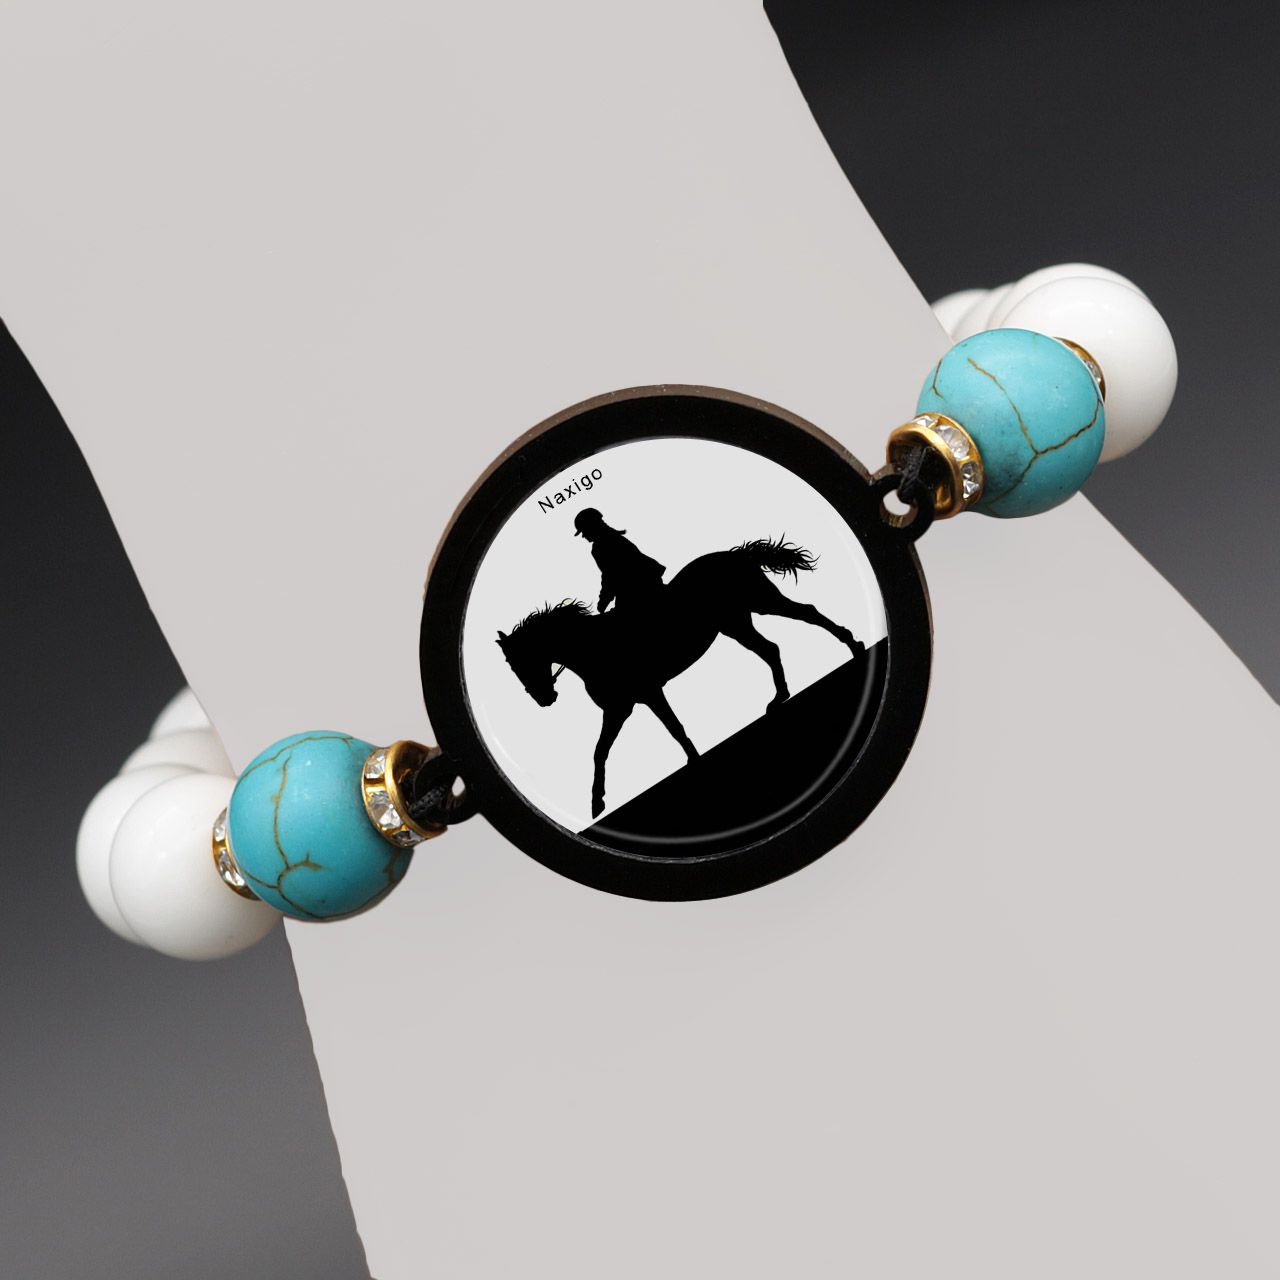 دستبند زنانه ناکسیگو طرح اسب سواری کد BR4011 -  - 7